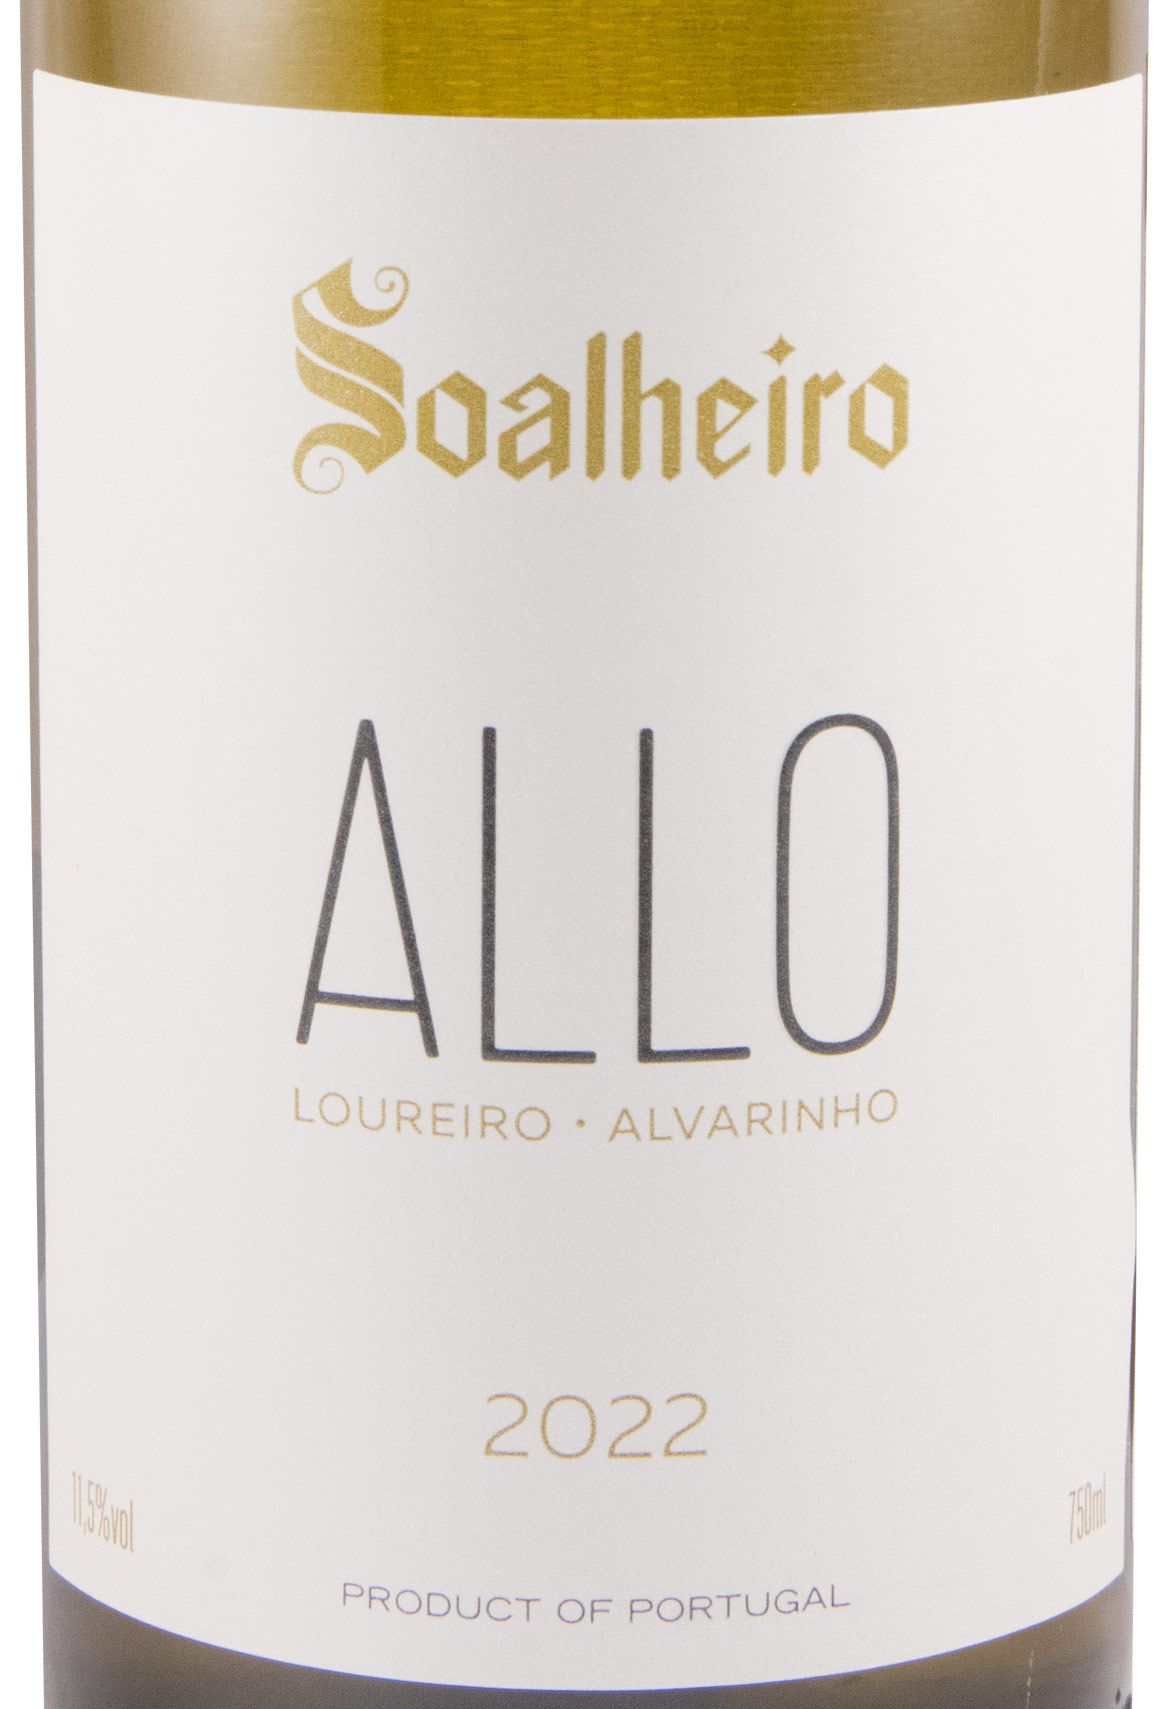 2022 Allo Alvarinho & Loureiro white